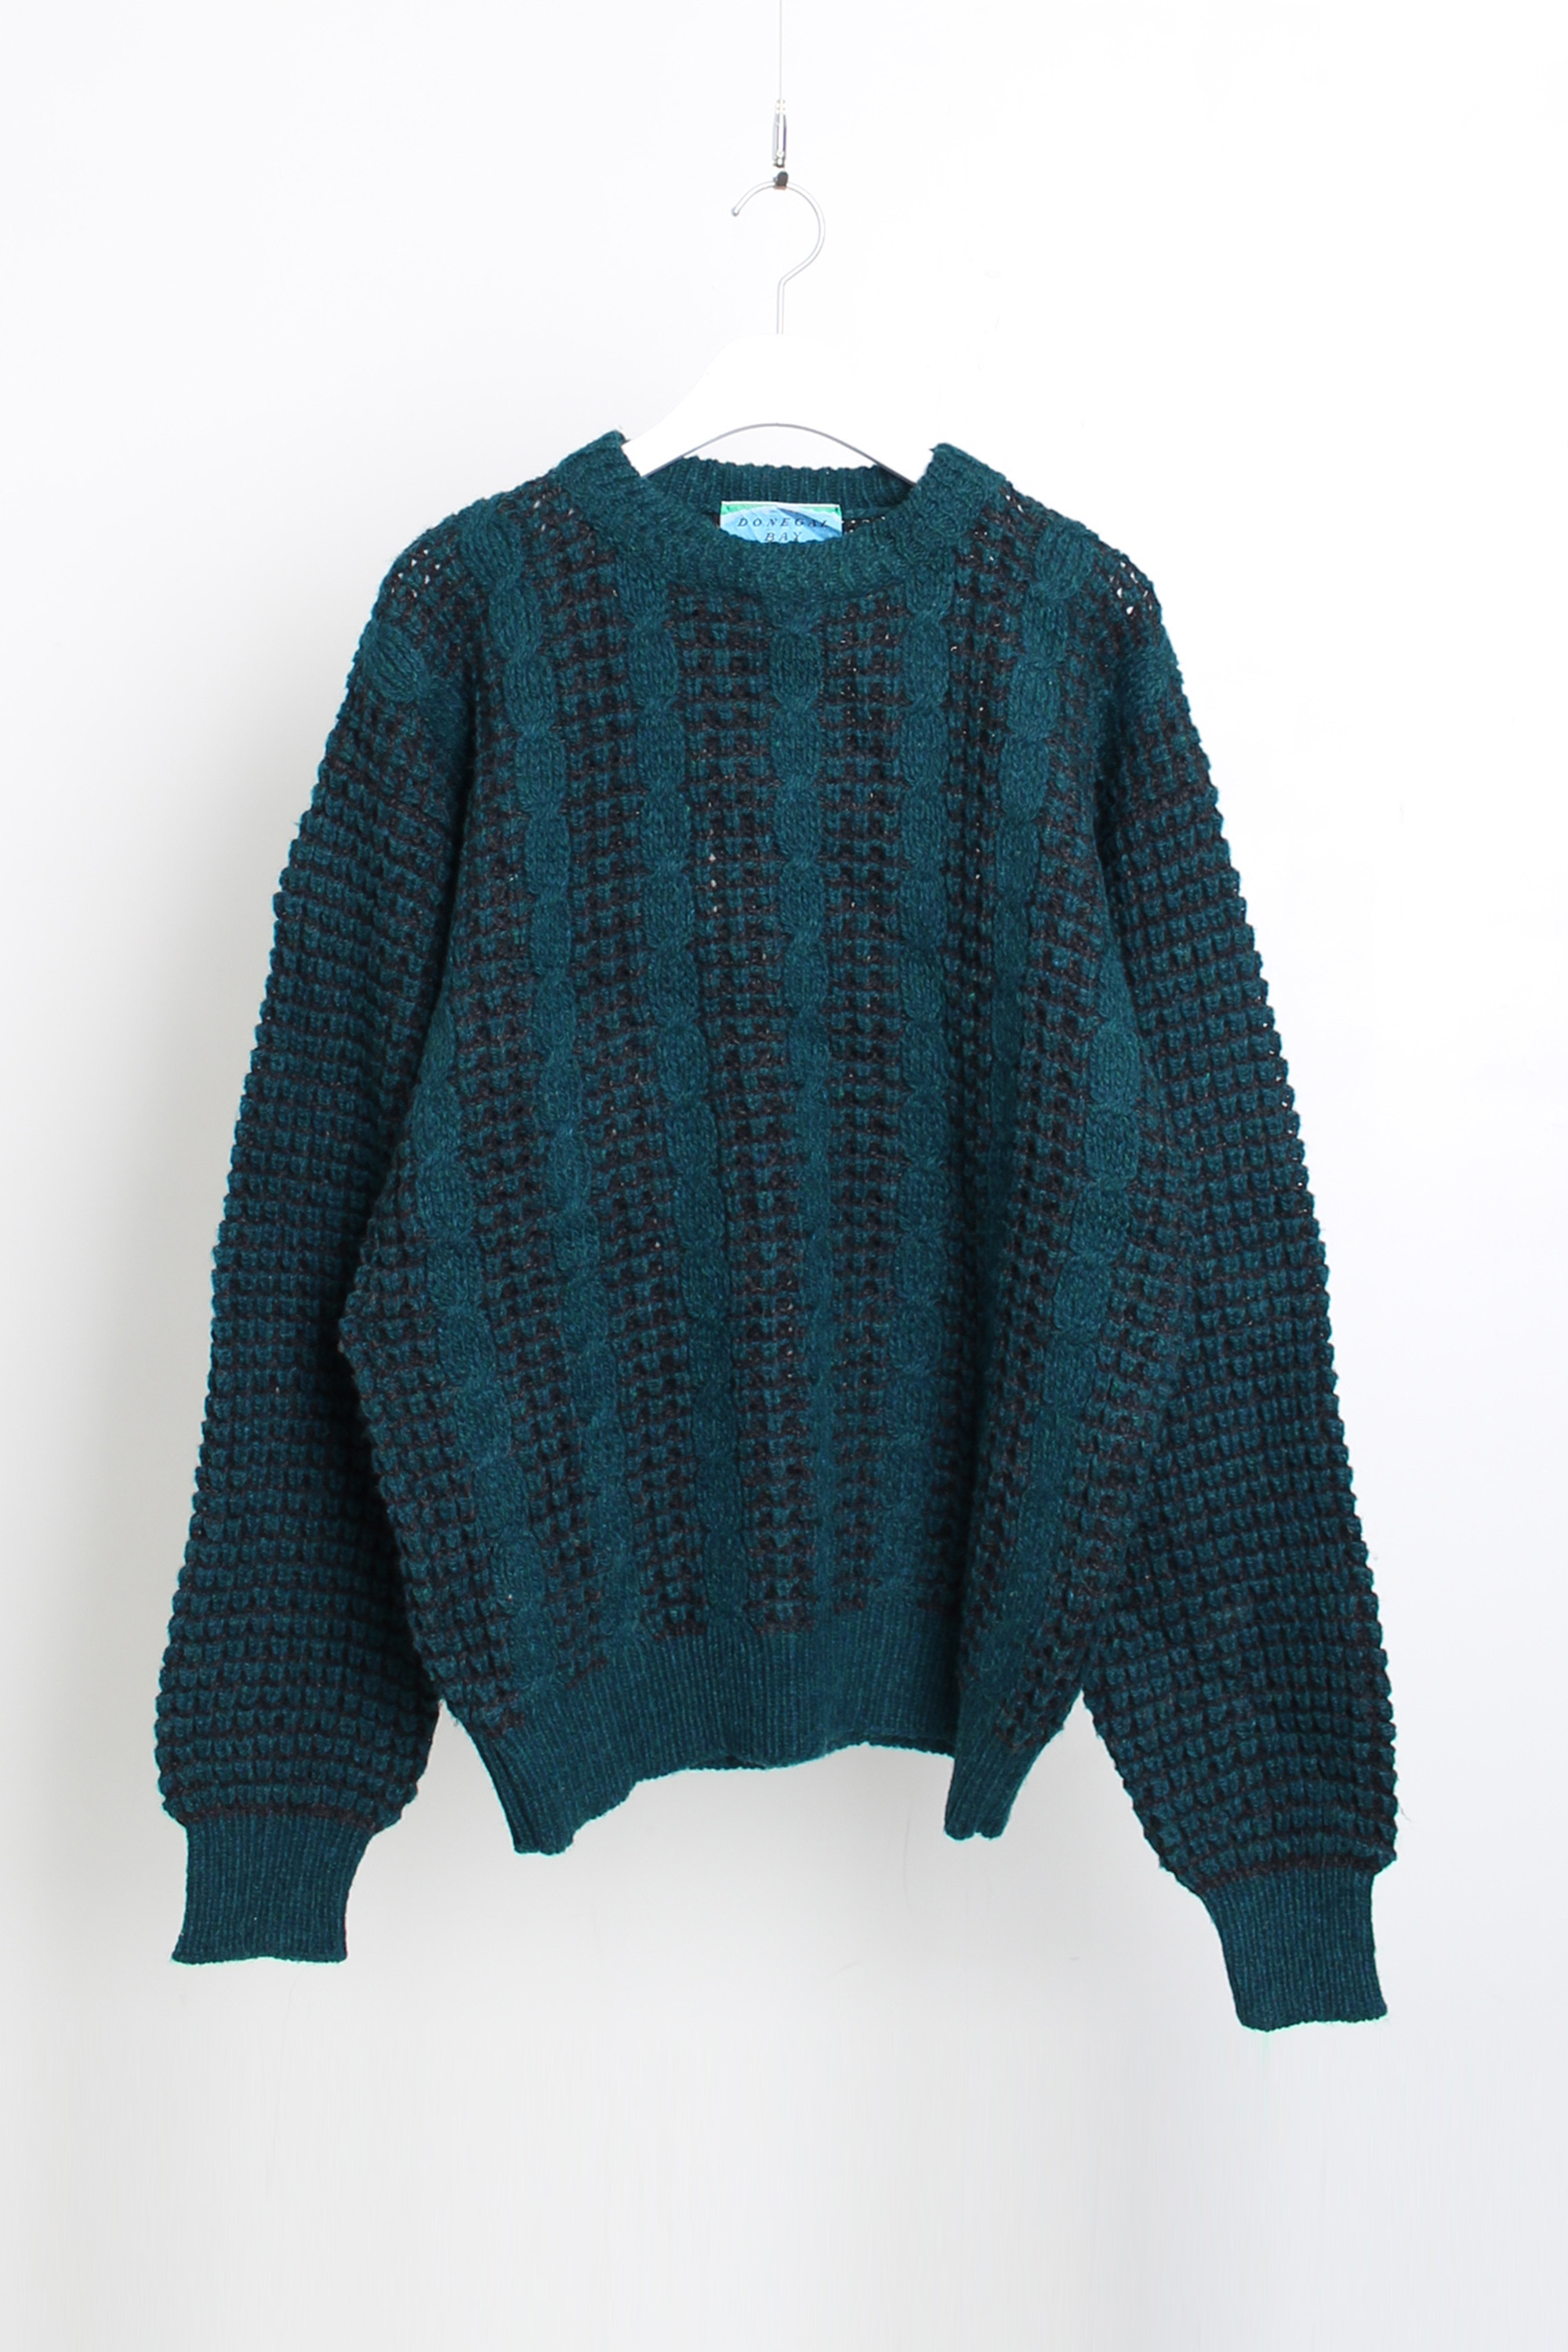 DONEGAL knitwear